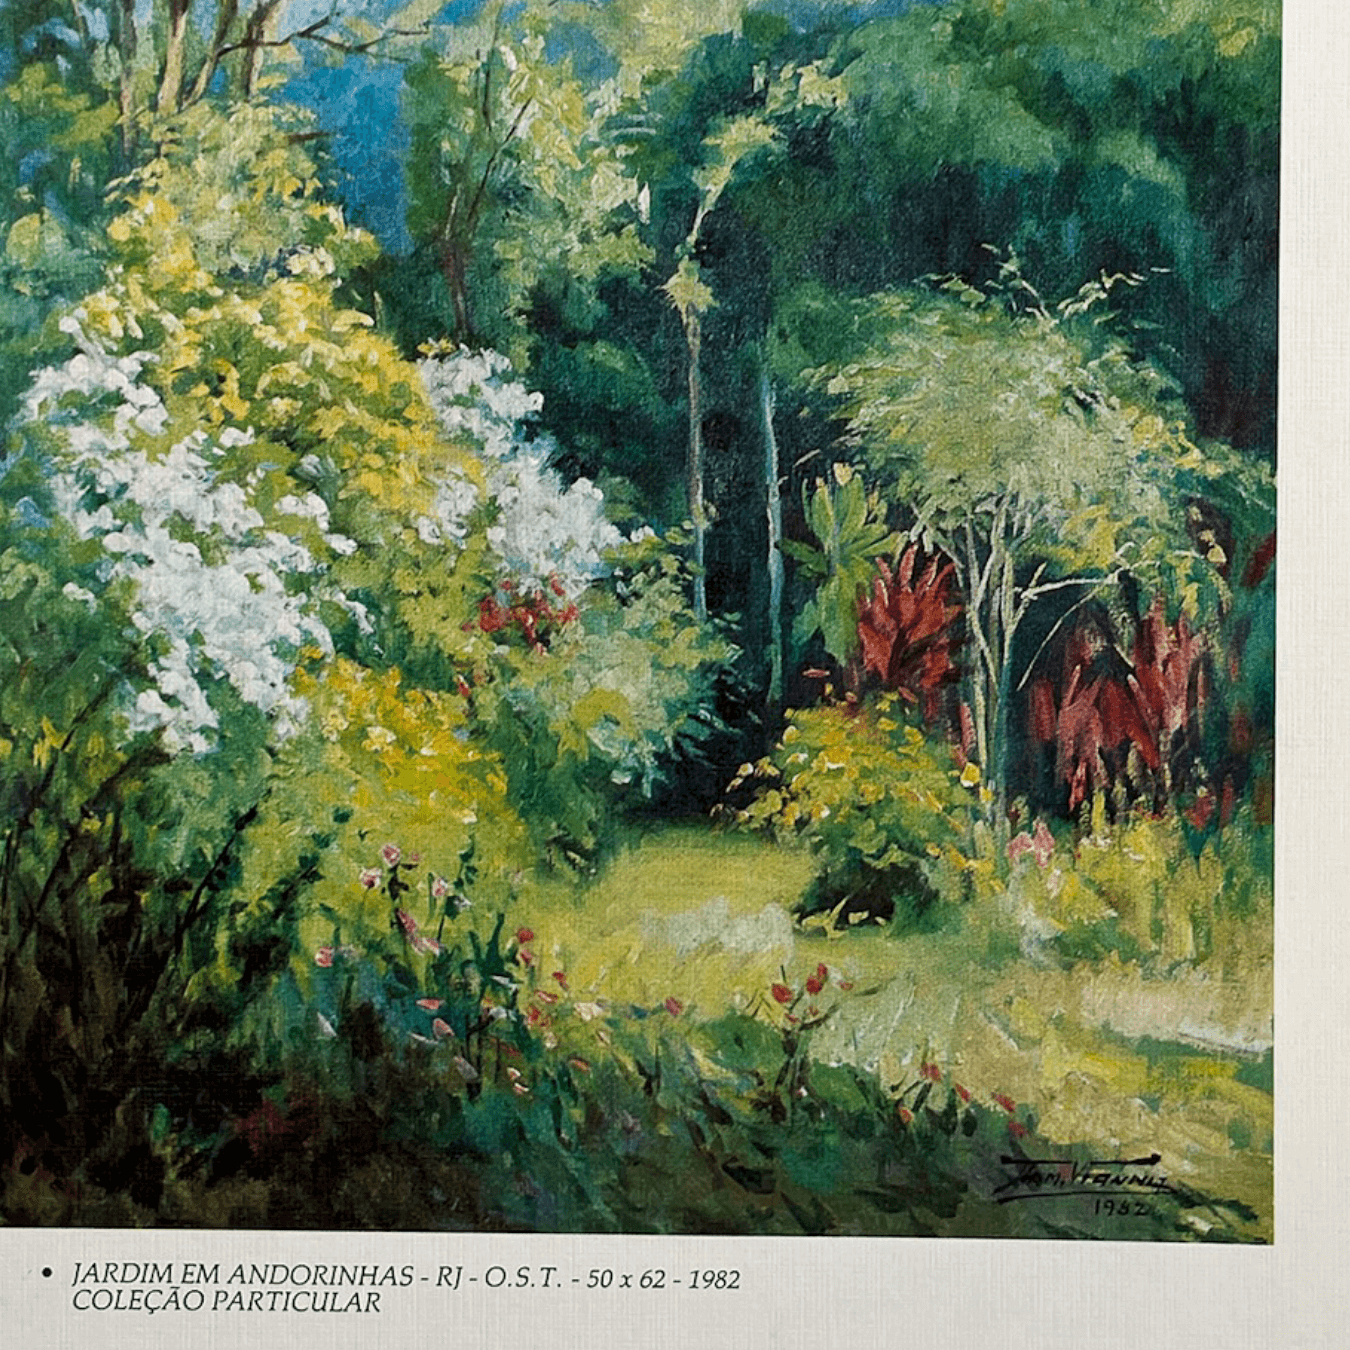 Reprodução "Jardim em Andorinhas RJ" de Armando Vianna de 1982